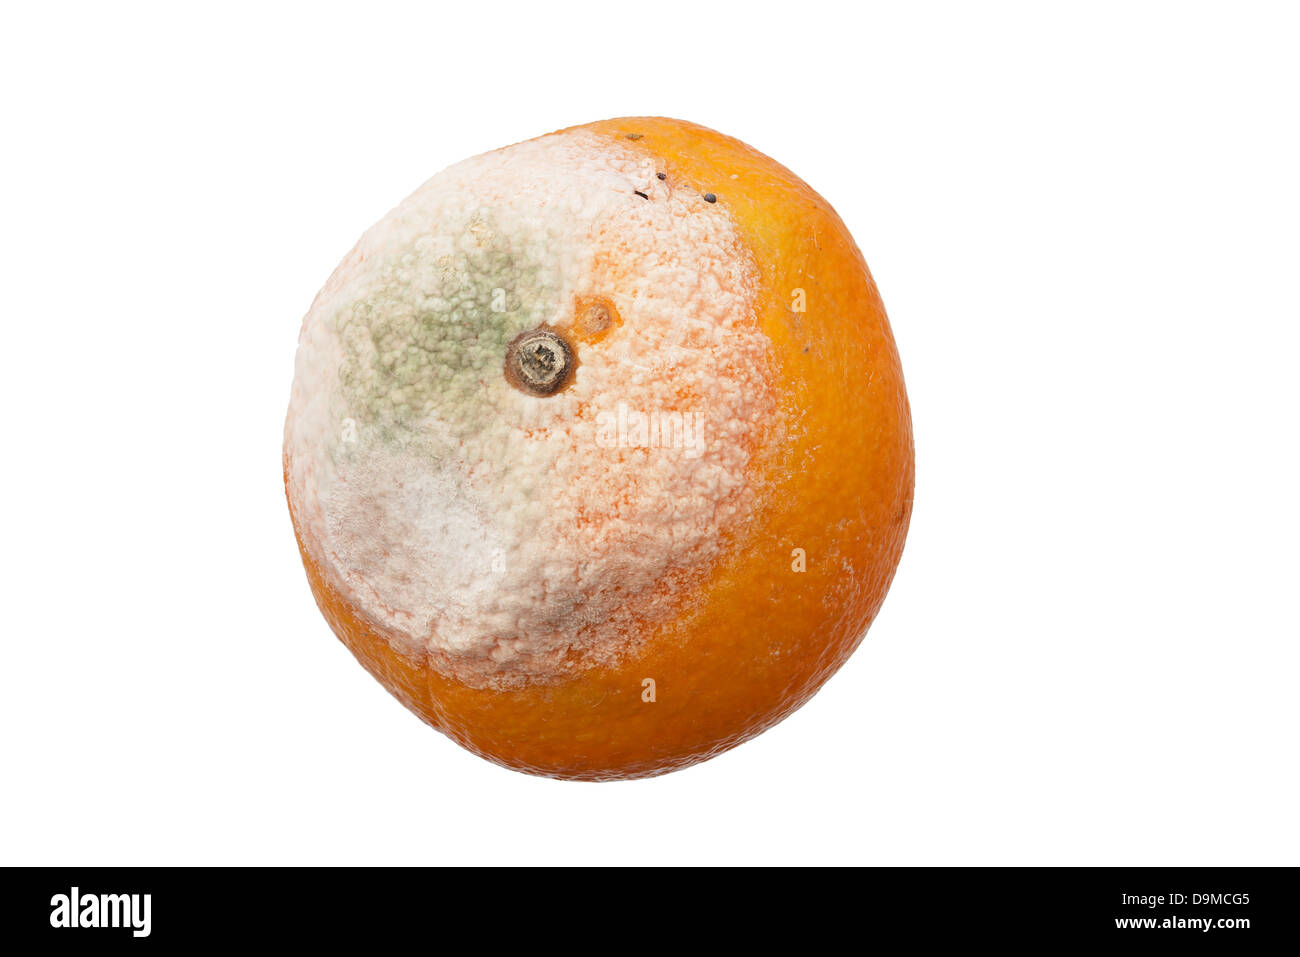 moldy orange fruit isolated on white background Stock Photo